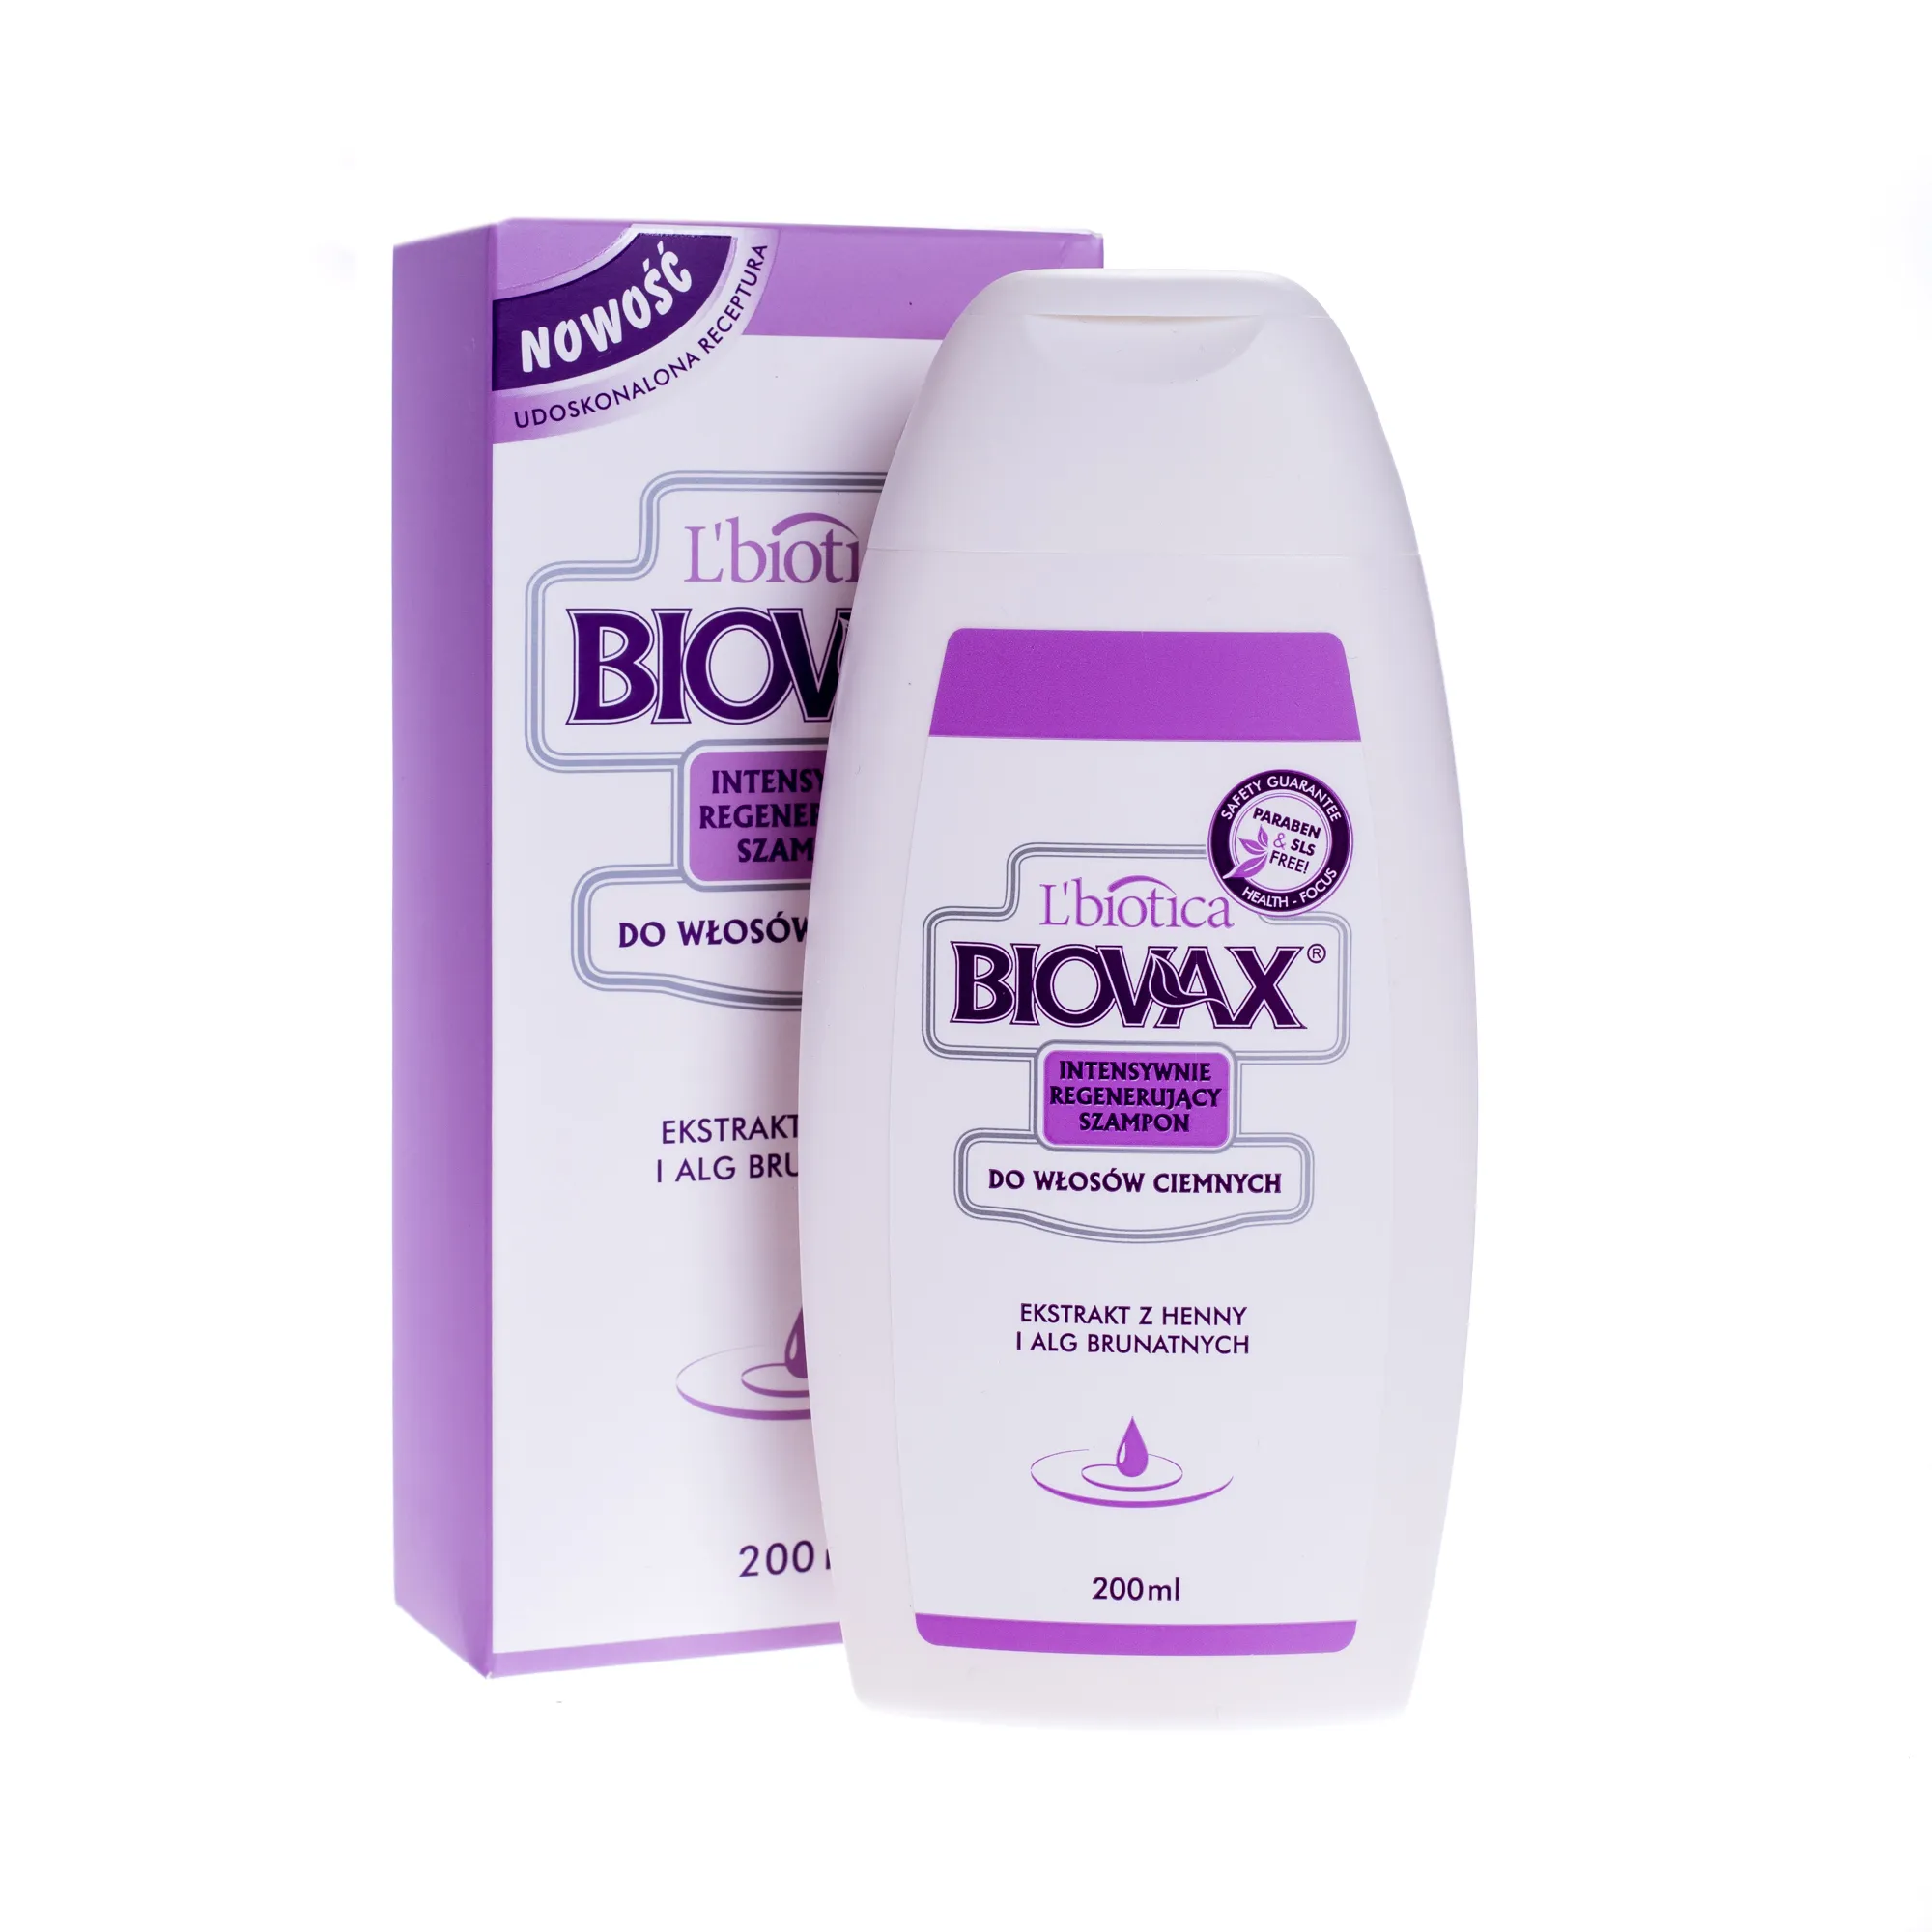 Biovax, szampon intensywnie regenerujący do włosów ciemnych, 200 ml 